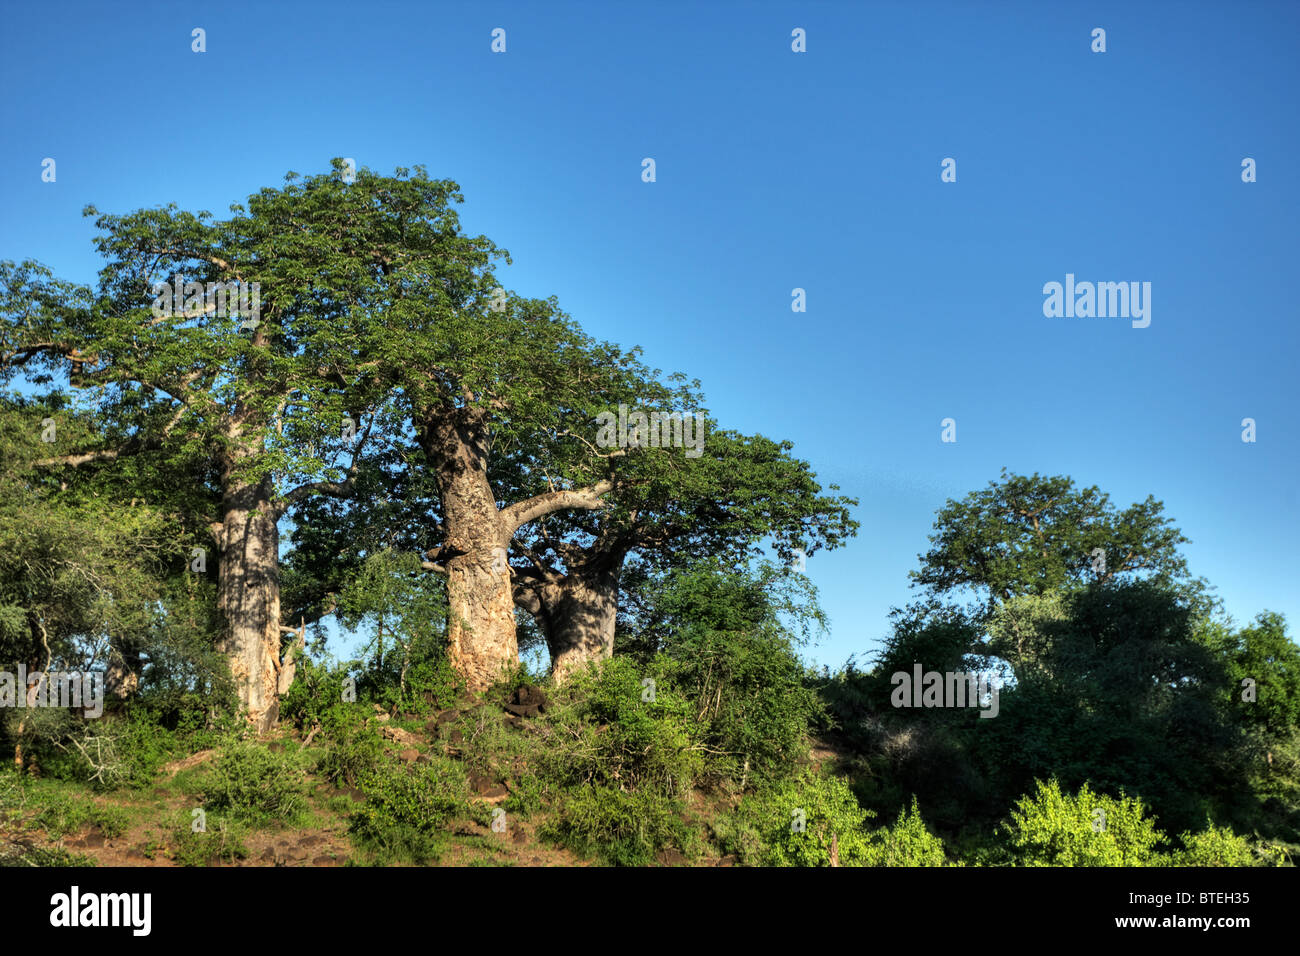 Basso angolo di visione degli alberi di baobab sul pendio di una collina vicino a Crook's corner sulle acque del fiume Limpopo Foto Stock